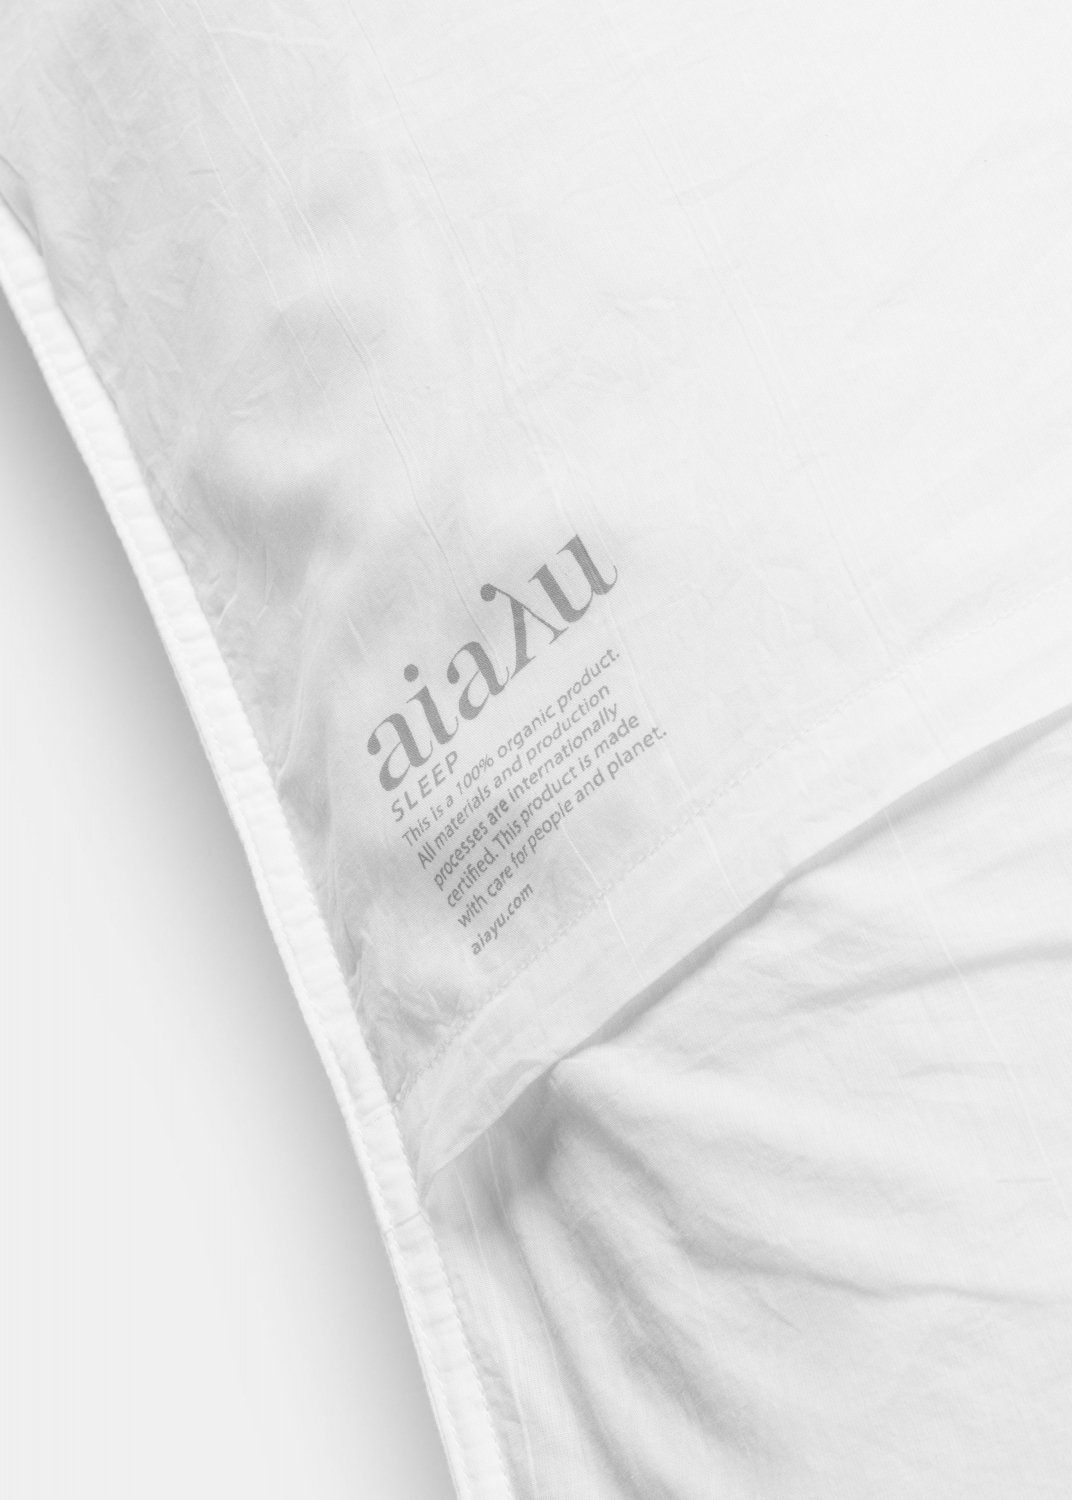 Bedlinen - Duvet Set - Single XL (140x220 + pillow case) 